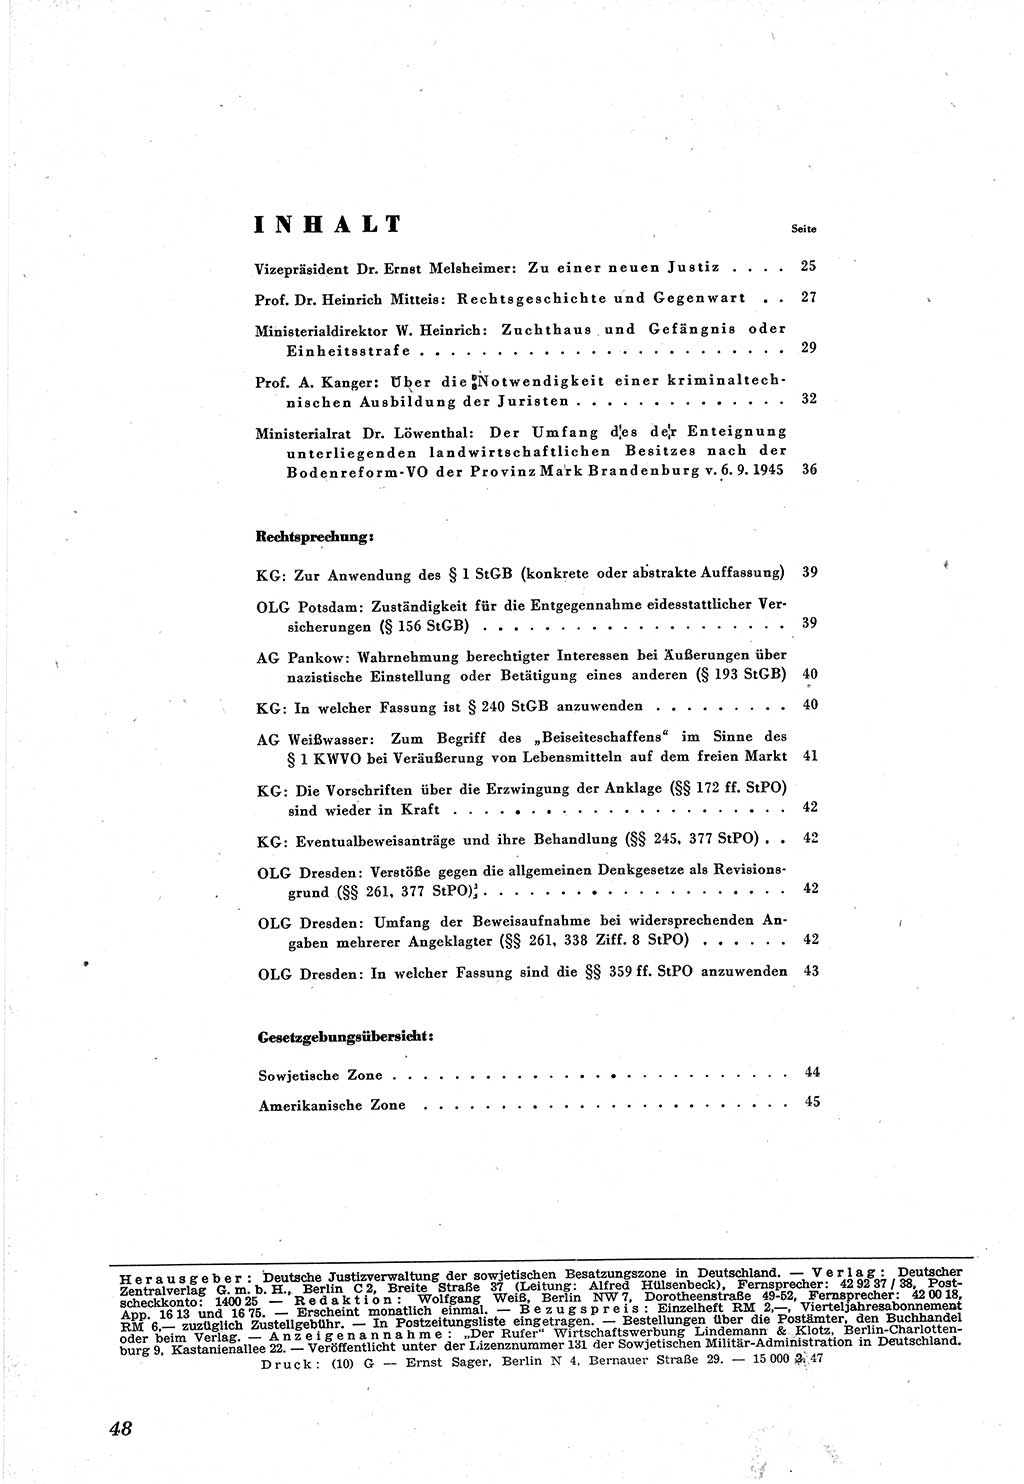 Neue Justiz (NJ), Zeitschrift für Recht und Rechtswissenschaft [Sowjetische Besatzungszone (SBZ) Deutschland], 1. Jahrgang 1947, Seite 48 (NJ SBZ Dtl. 1947, S. 48)